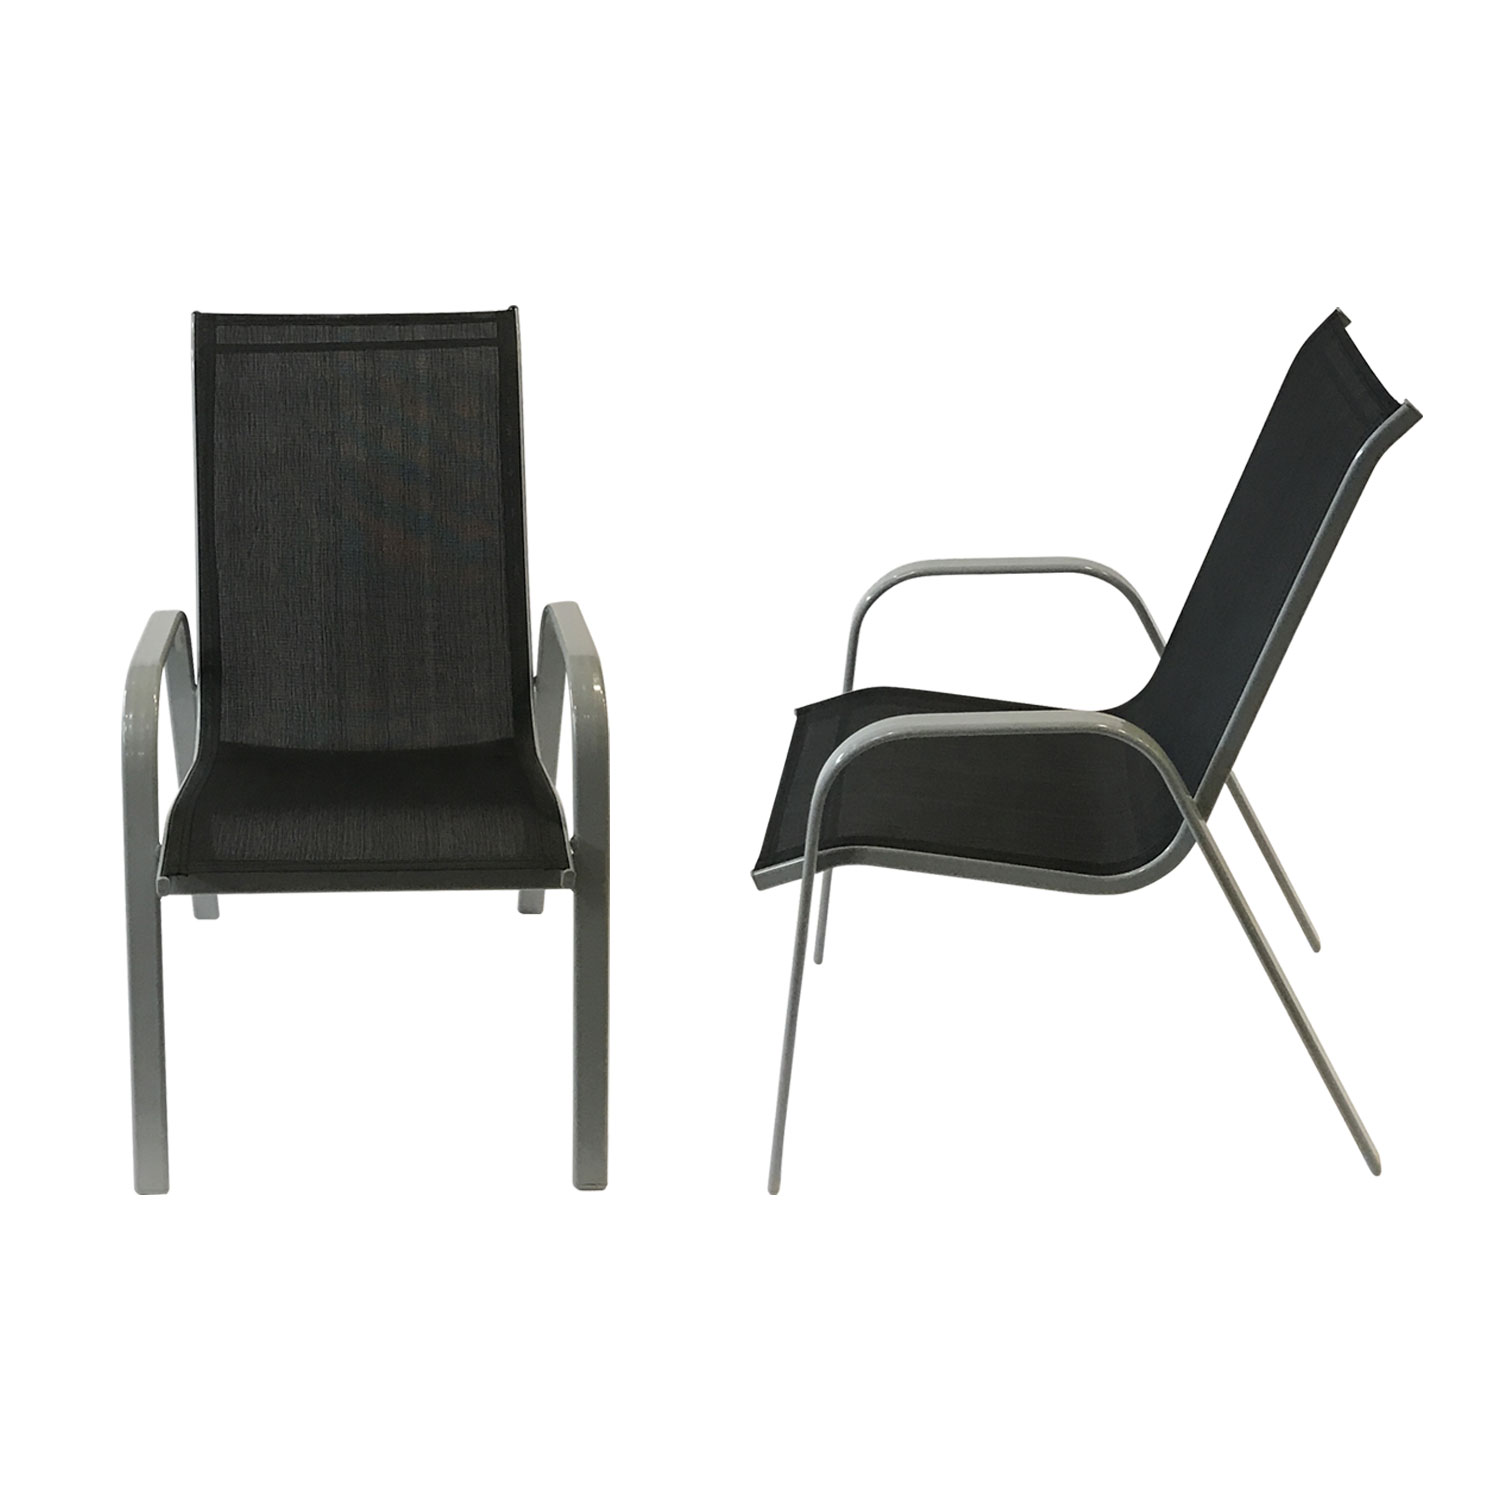 Lote de 8 sillas MARBELLA en textileno negro - aluminio gris